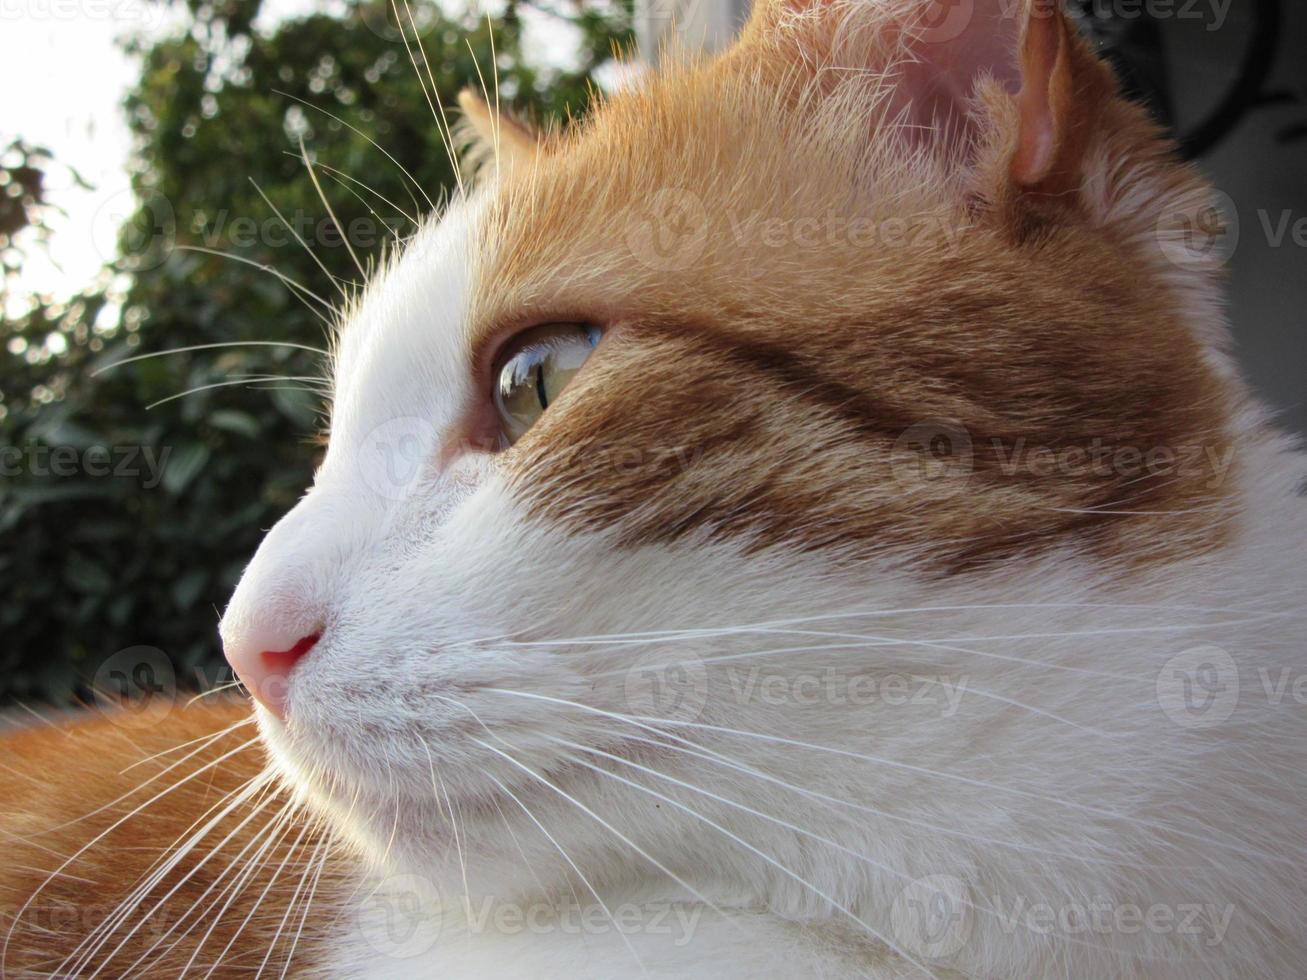 perfil de gato tigrado laranja e branco, aproveitando o sol foto